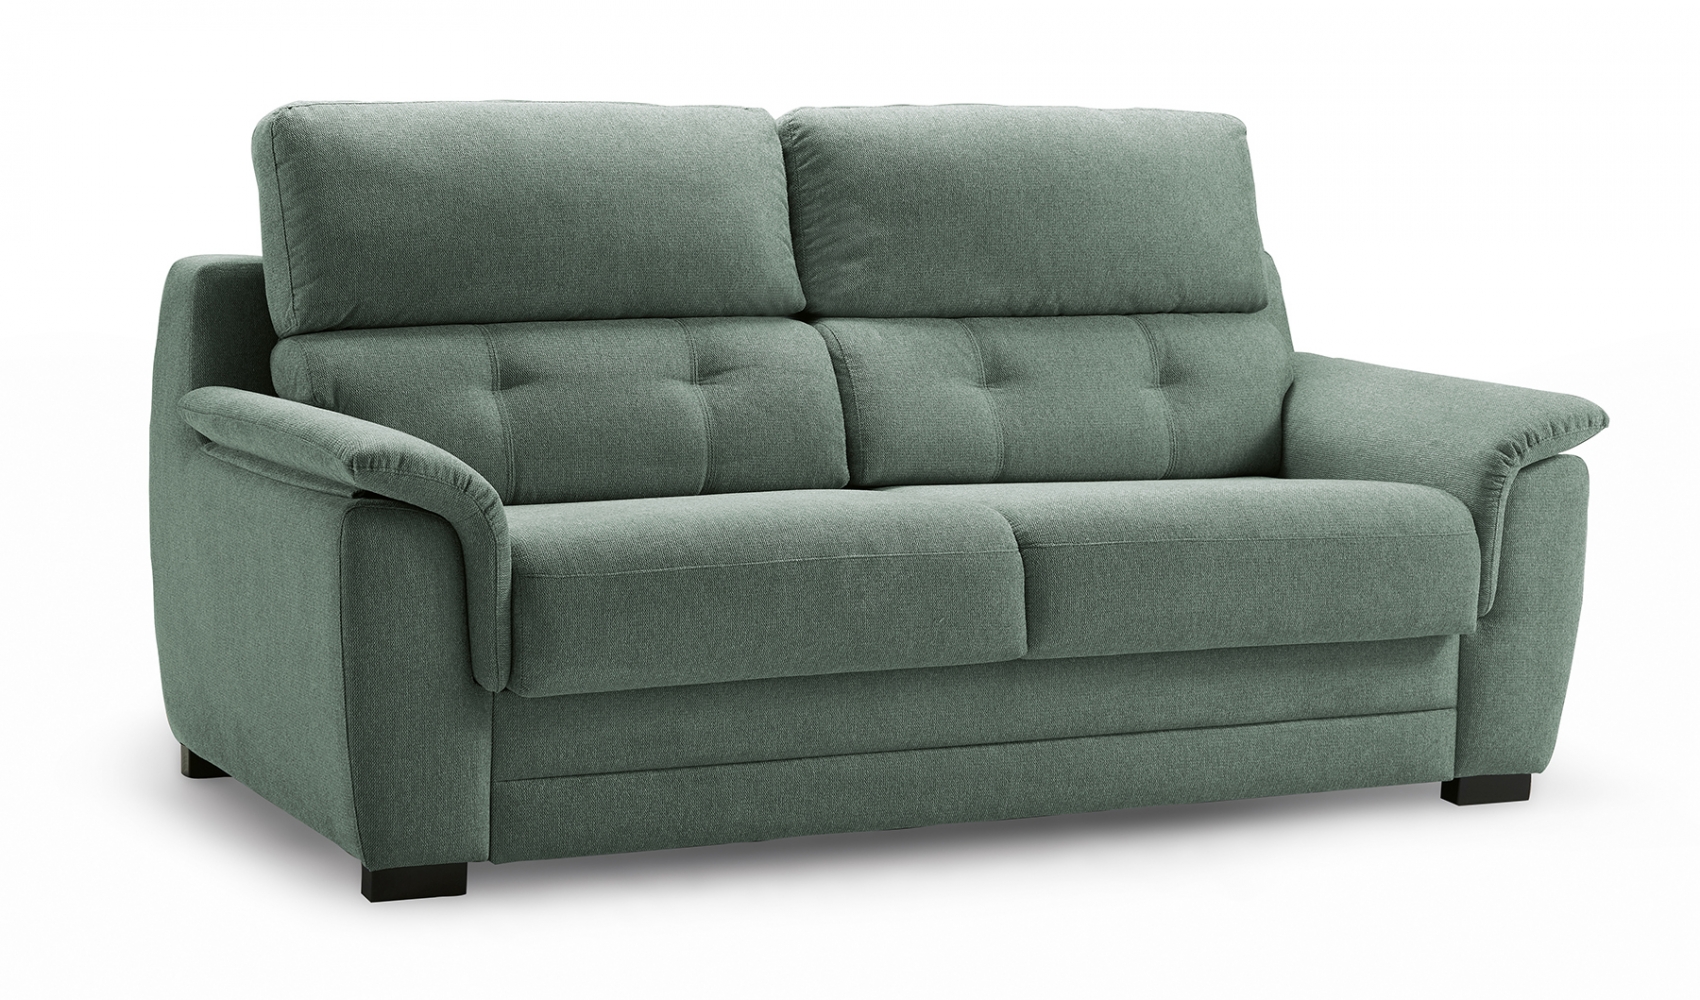 Vigo sofa bed